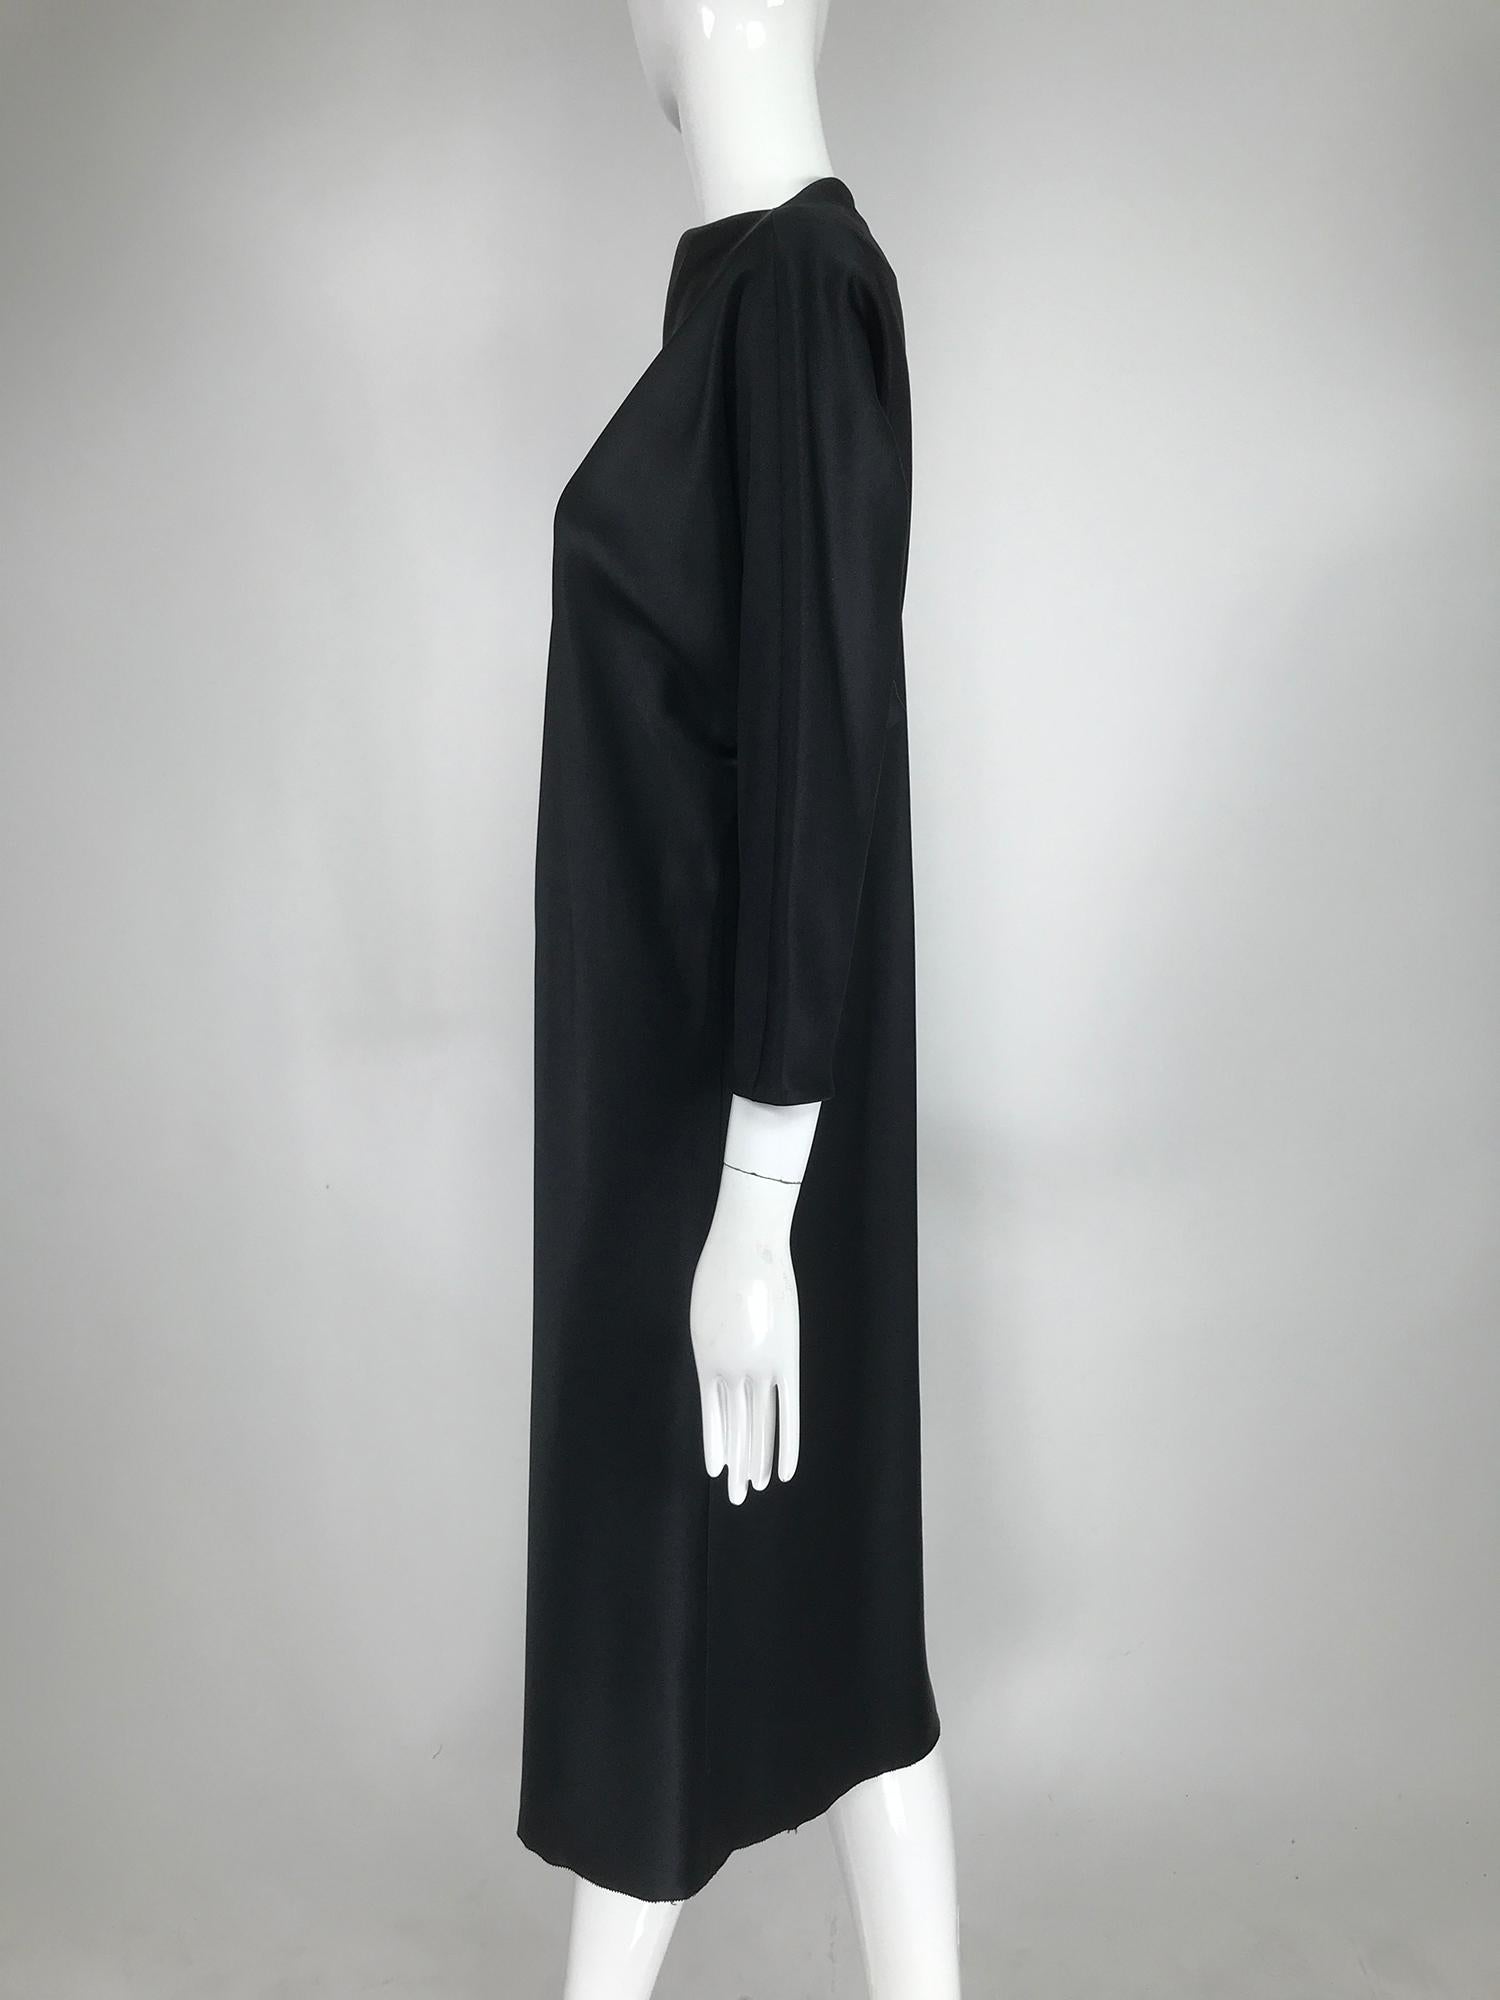 Robe classique de Jackie Rogers en satin noir soyeux, coupée en biais, datant des années 1990. La robe noire parfaite à habiller avec des bijoux ou une ceinture. La robe se glisse sur la tête, la coupe en biais fait le reste. Ourlet à picots. Non